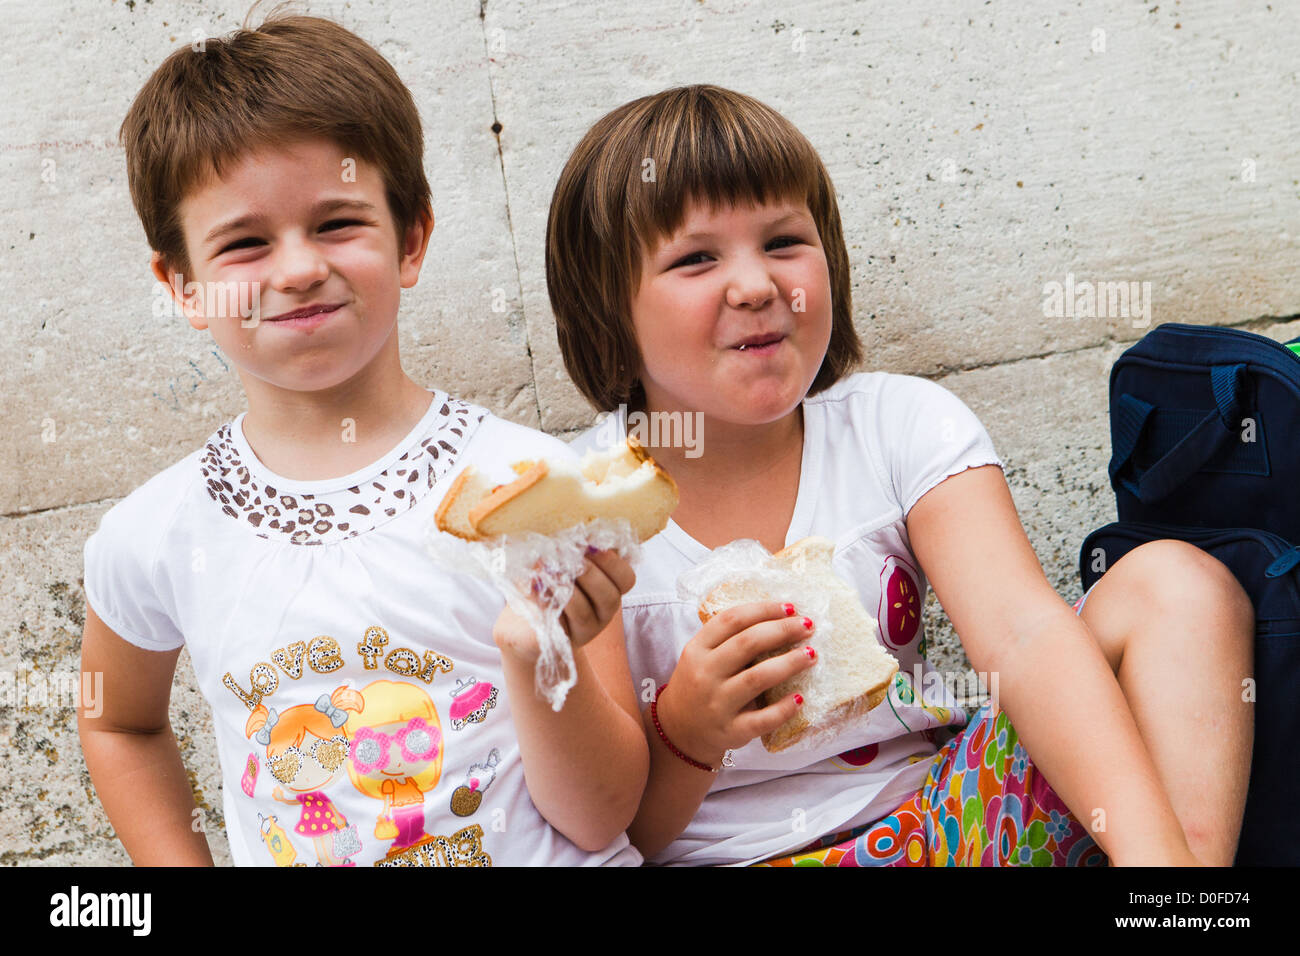 Les enfants de manger des sandwiches. Korcula Croatie Banque D'Images